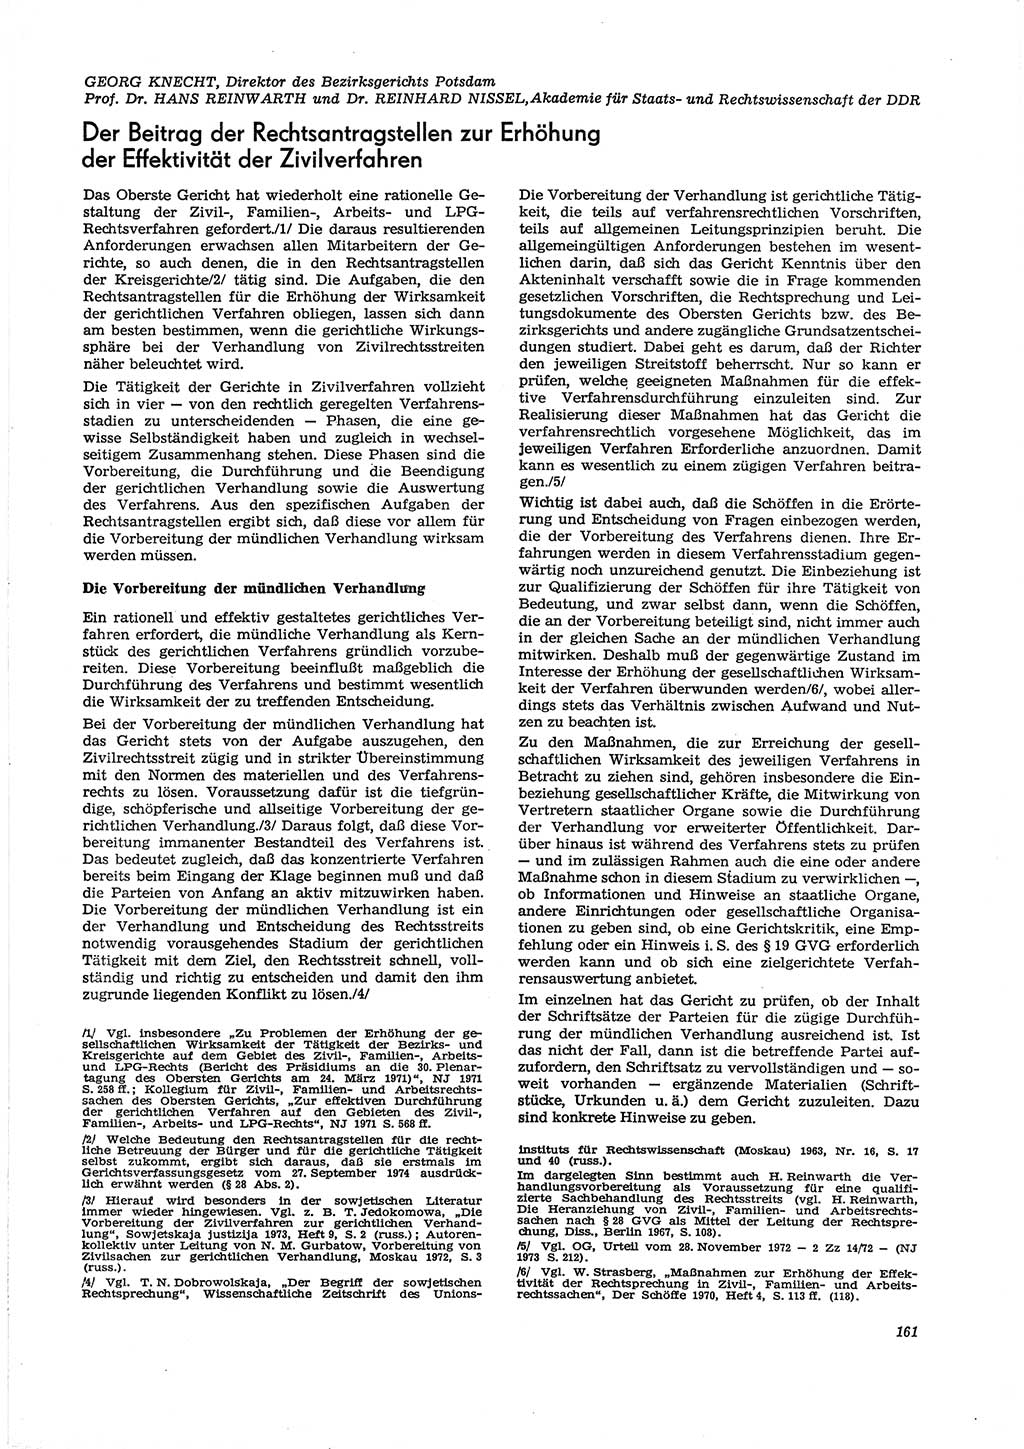 Neue Justiz (NJ), Zeitschrift für Recht und Rechtswissenschaft [Deutsche Demokratische Republik (DDR)], 29. Jahrgang 1975, Seite 161 (NJ DDR 1975, S. 161)